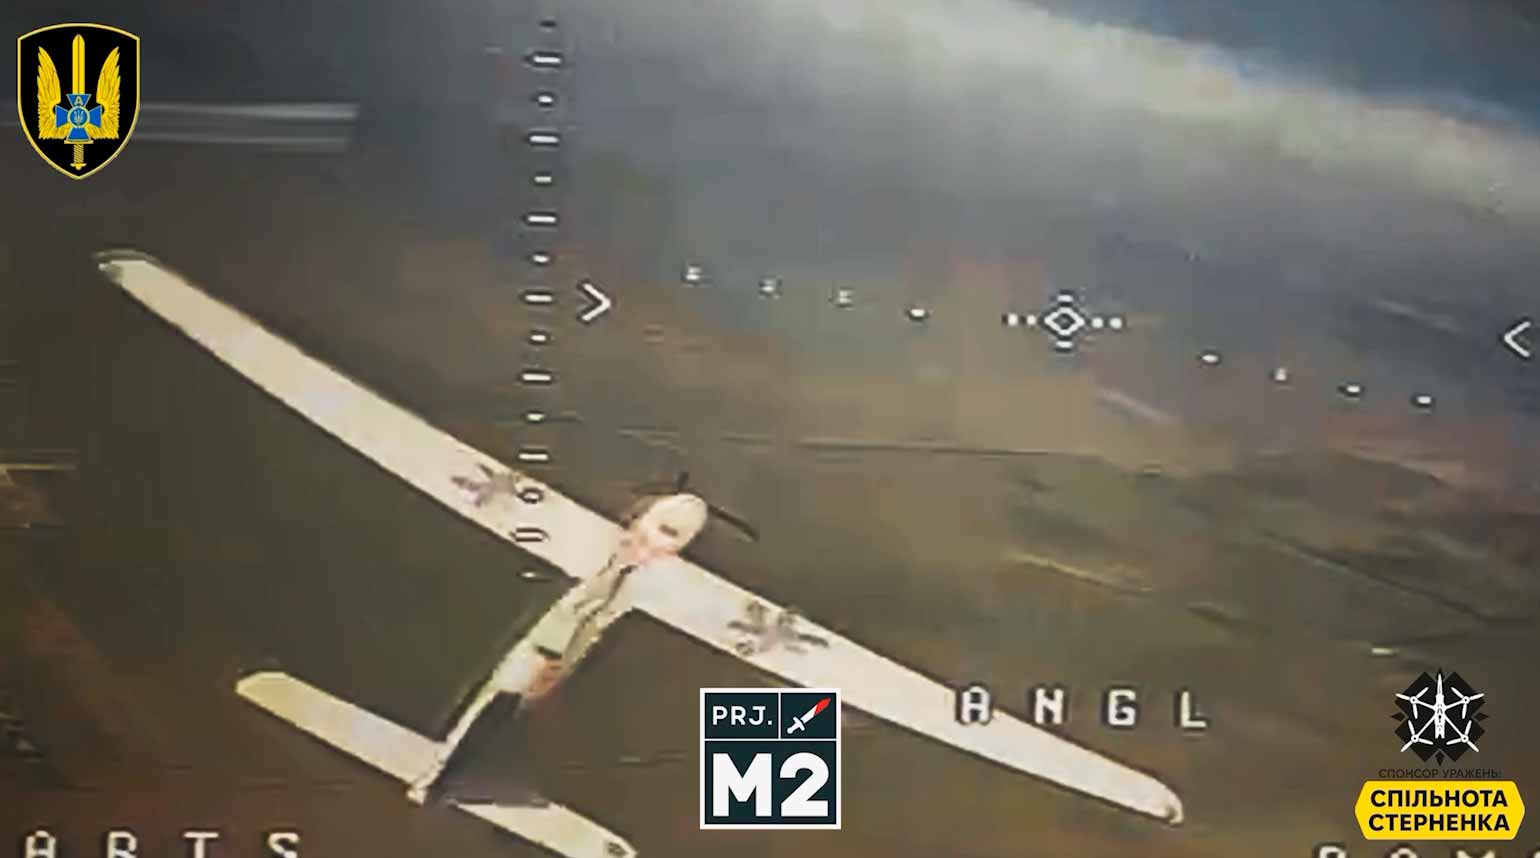 Video: I droni FPV ucraini hanno abbattuto due droni di ricognizione russi. Foto e video: Telegram t.me/ssternenko